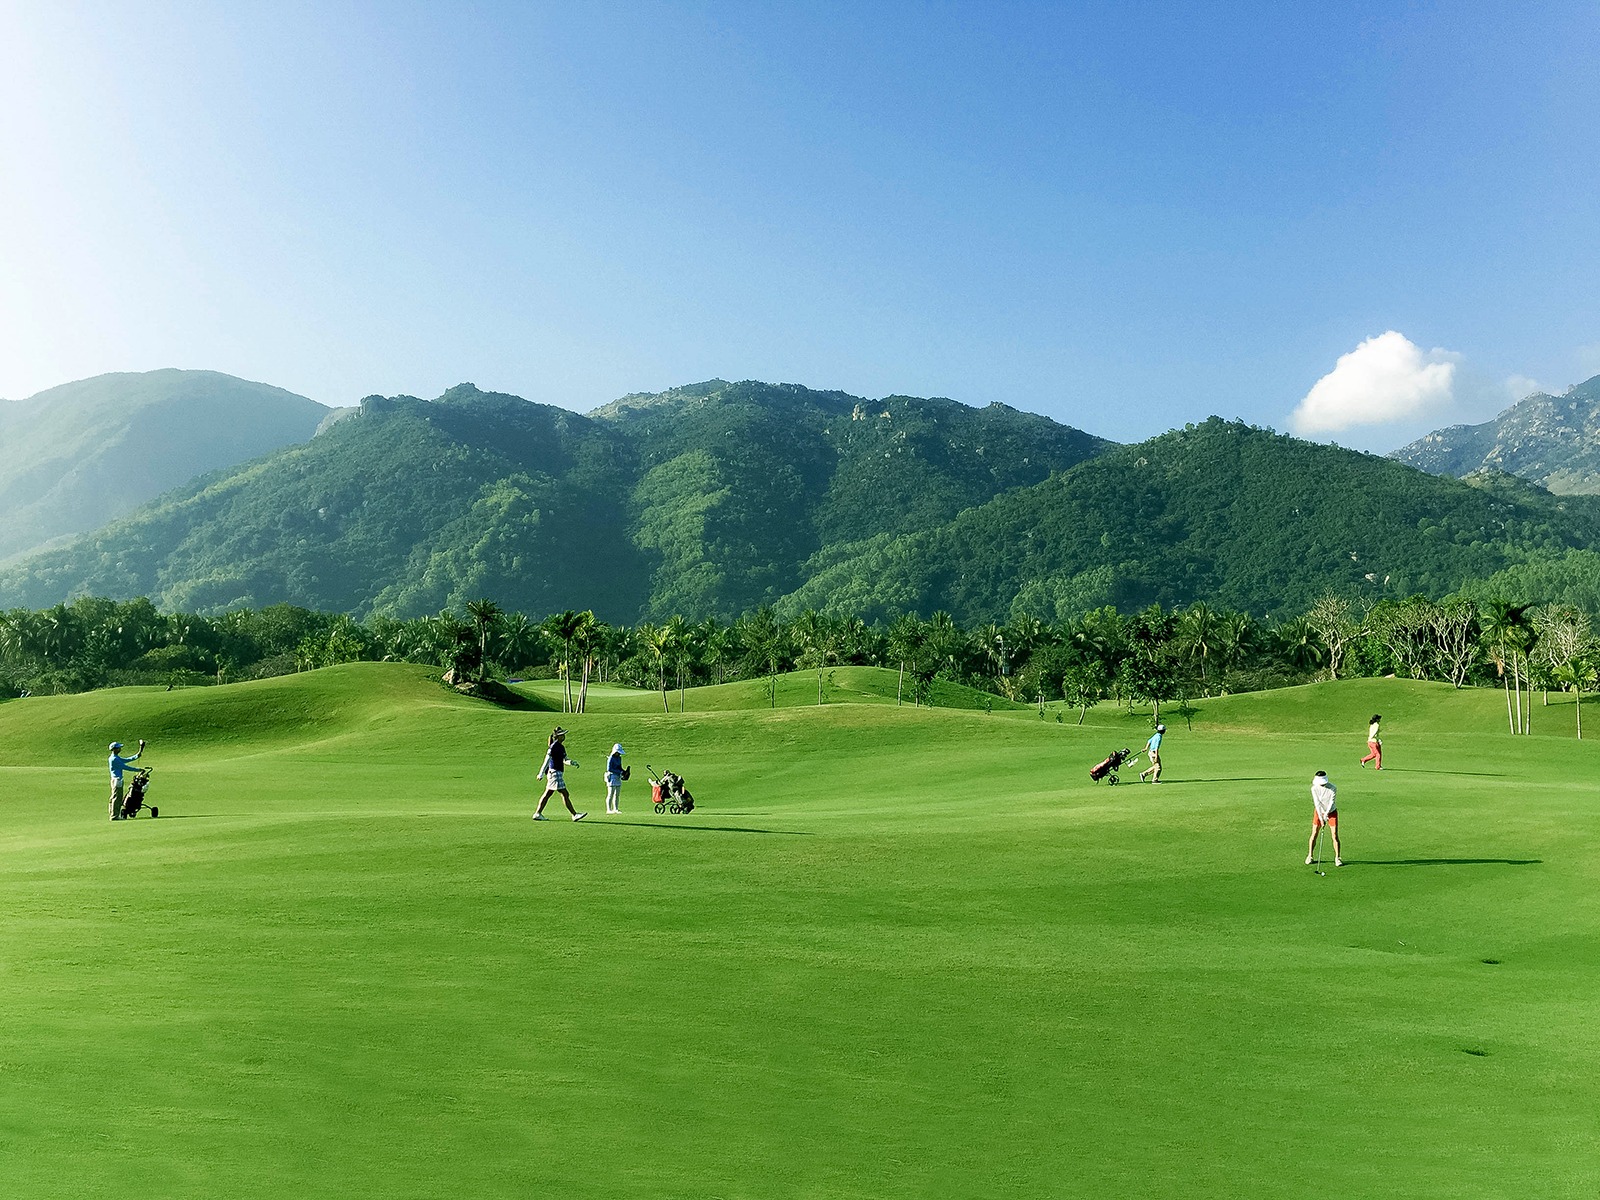 Sân golf Diamond Bay Nha Trang nằm trong quần thể khu du lịch, giải trí Diamond Bay Resort & Golf